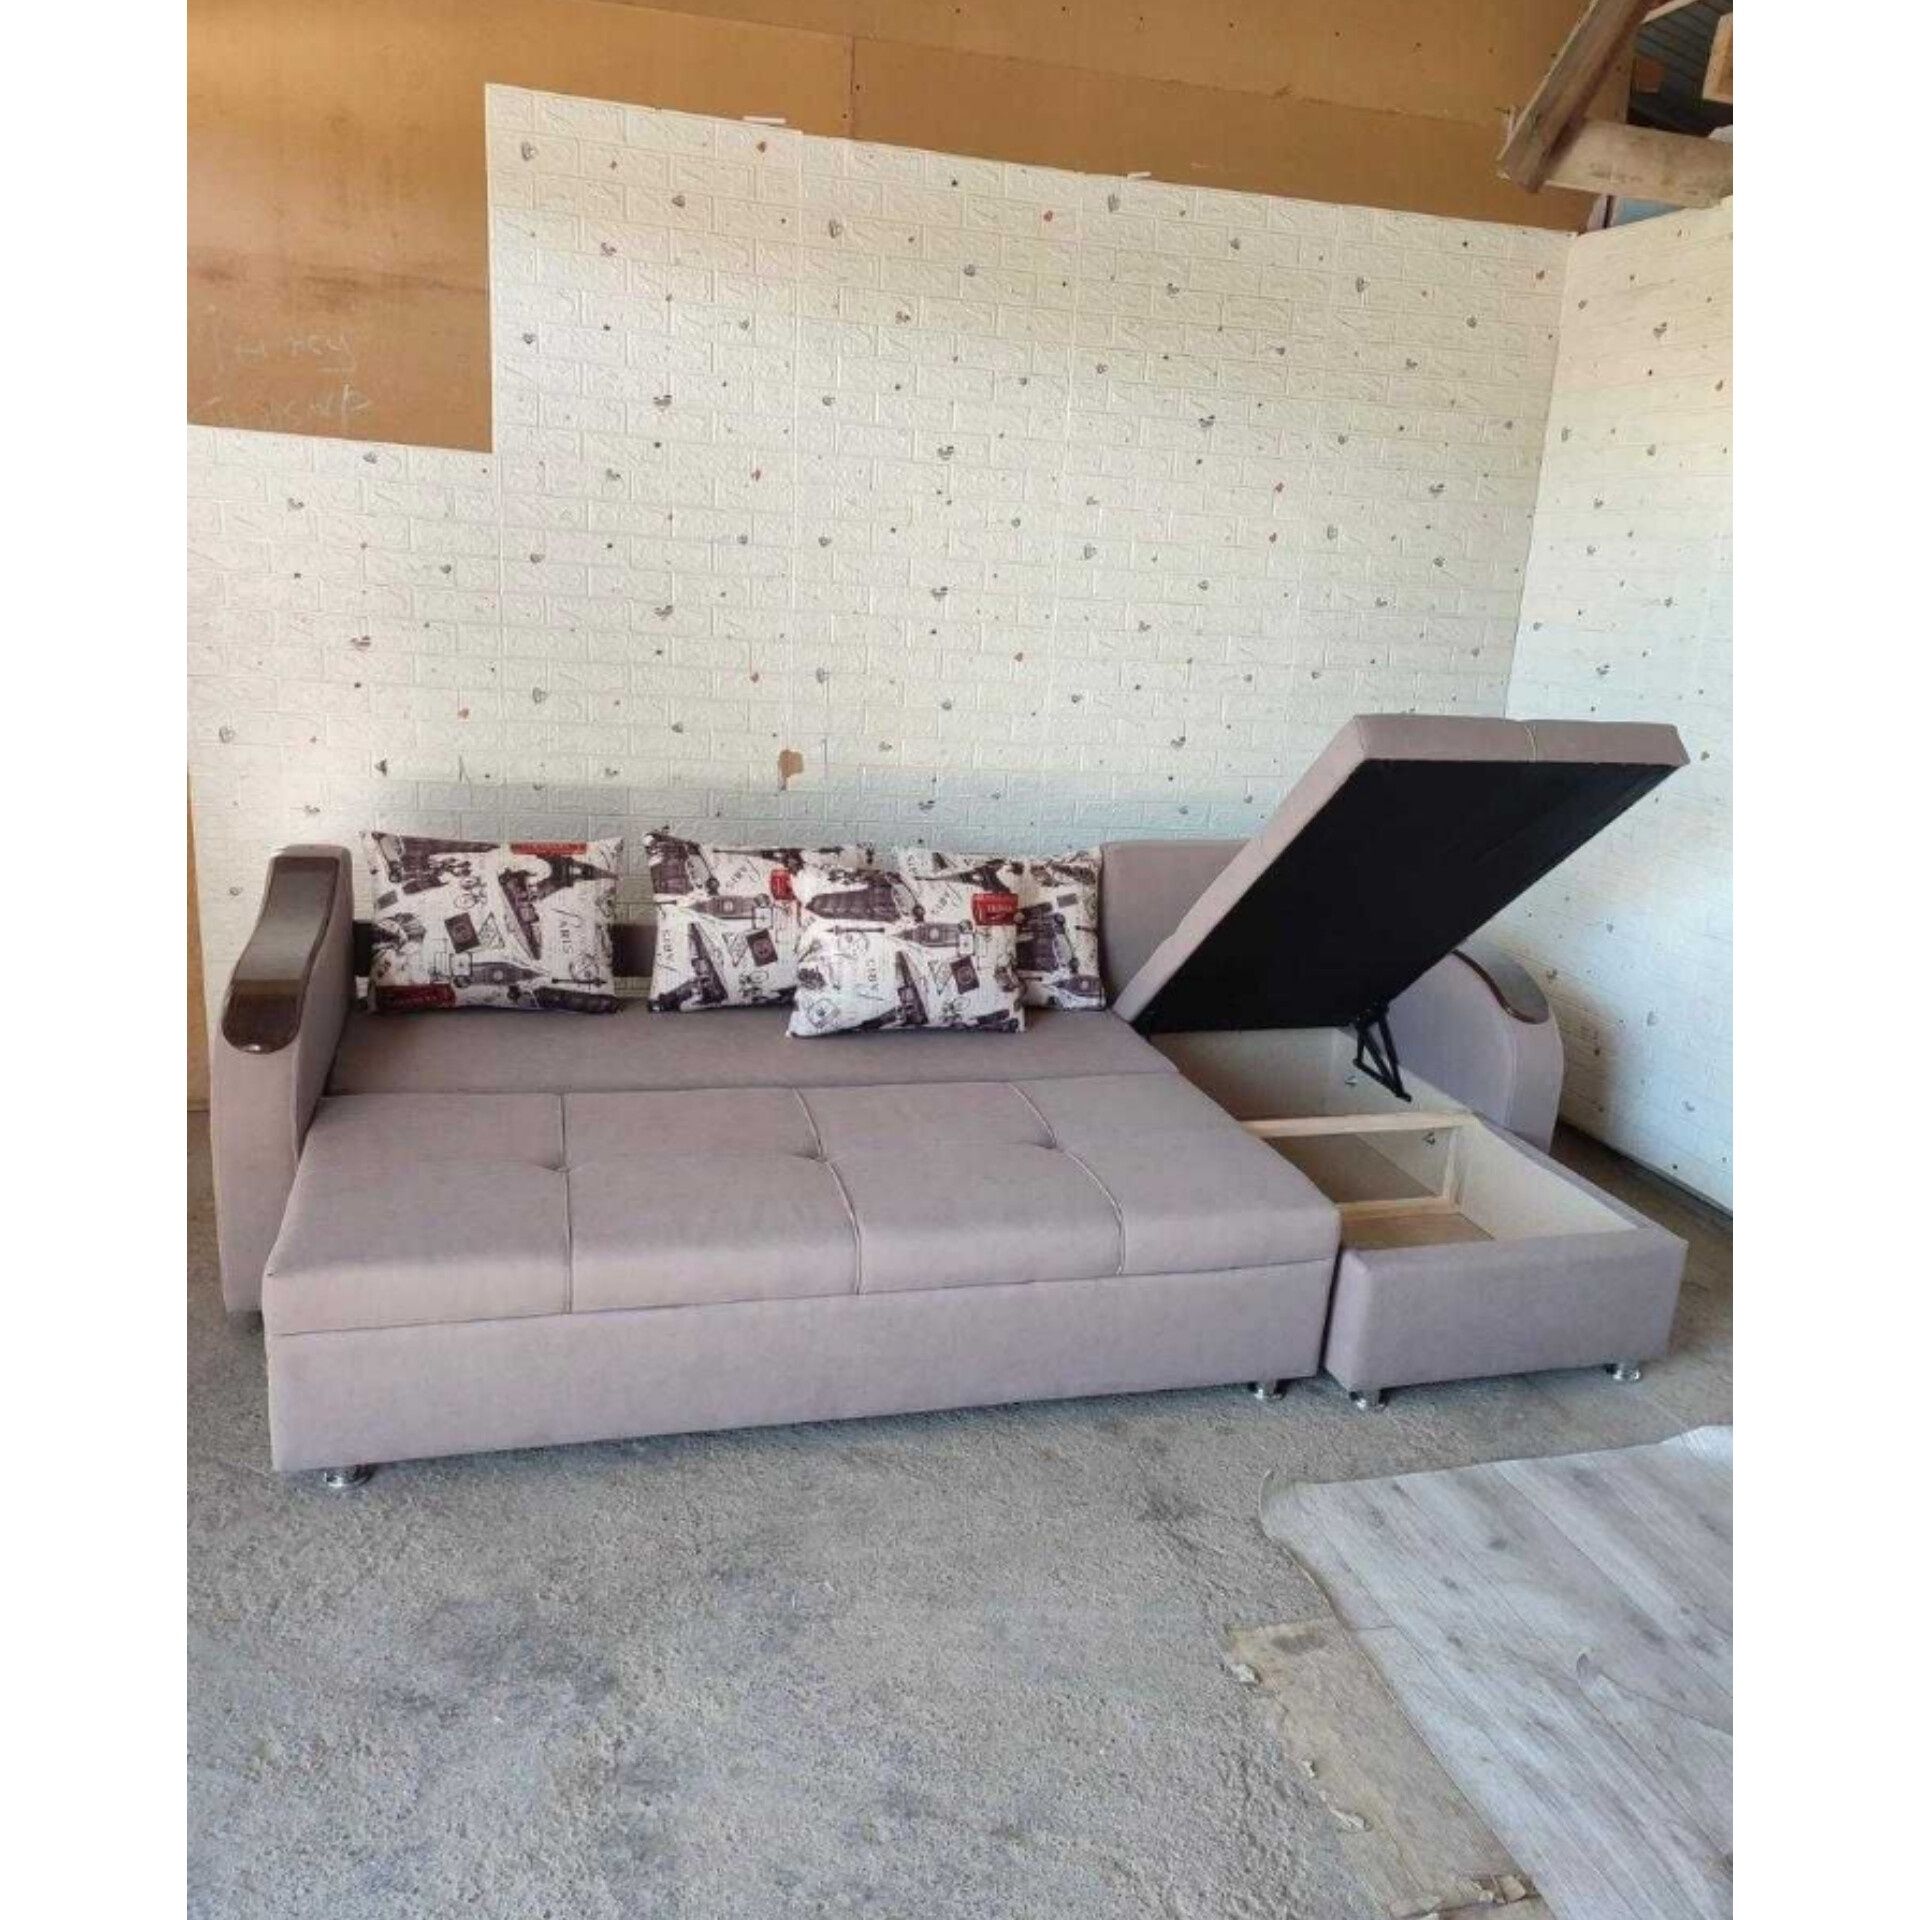 Угловой диван| Диван угловой от производителя в Актобе! Цены ниже рын